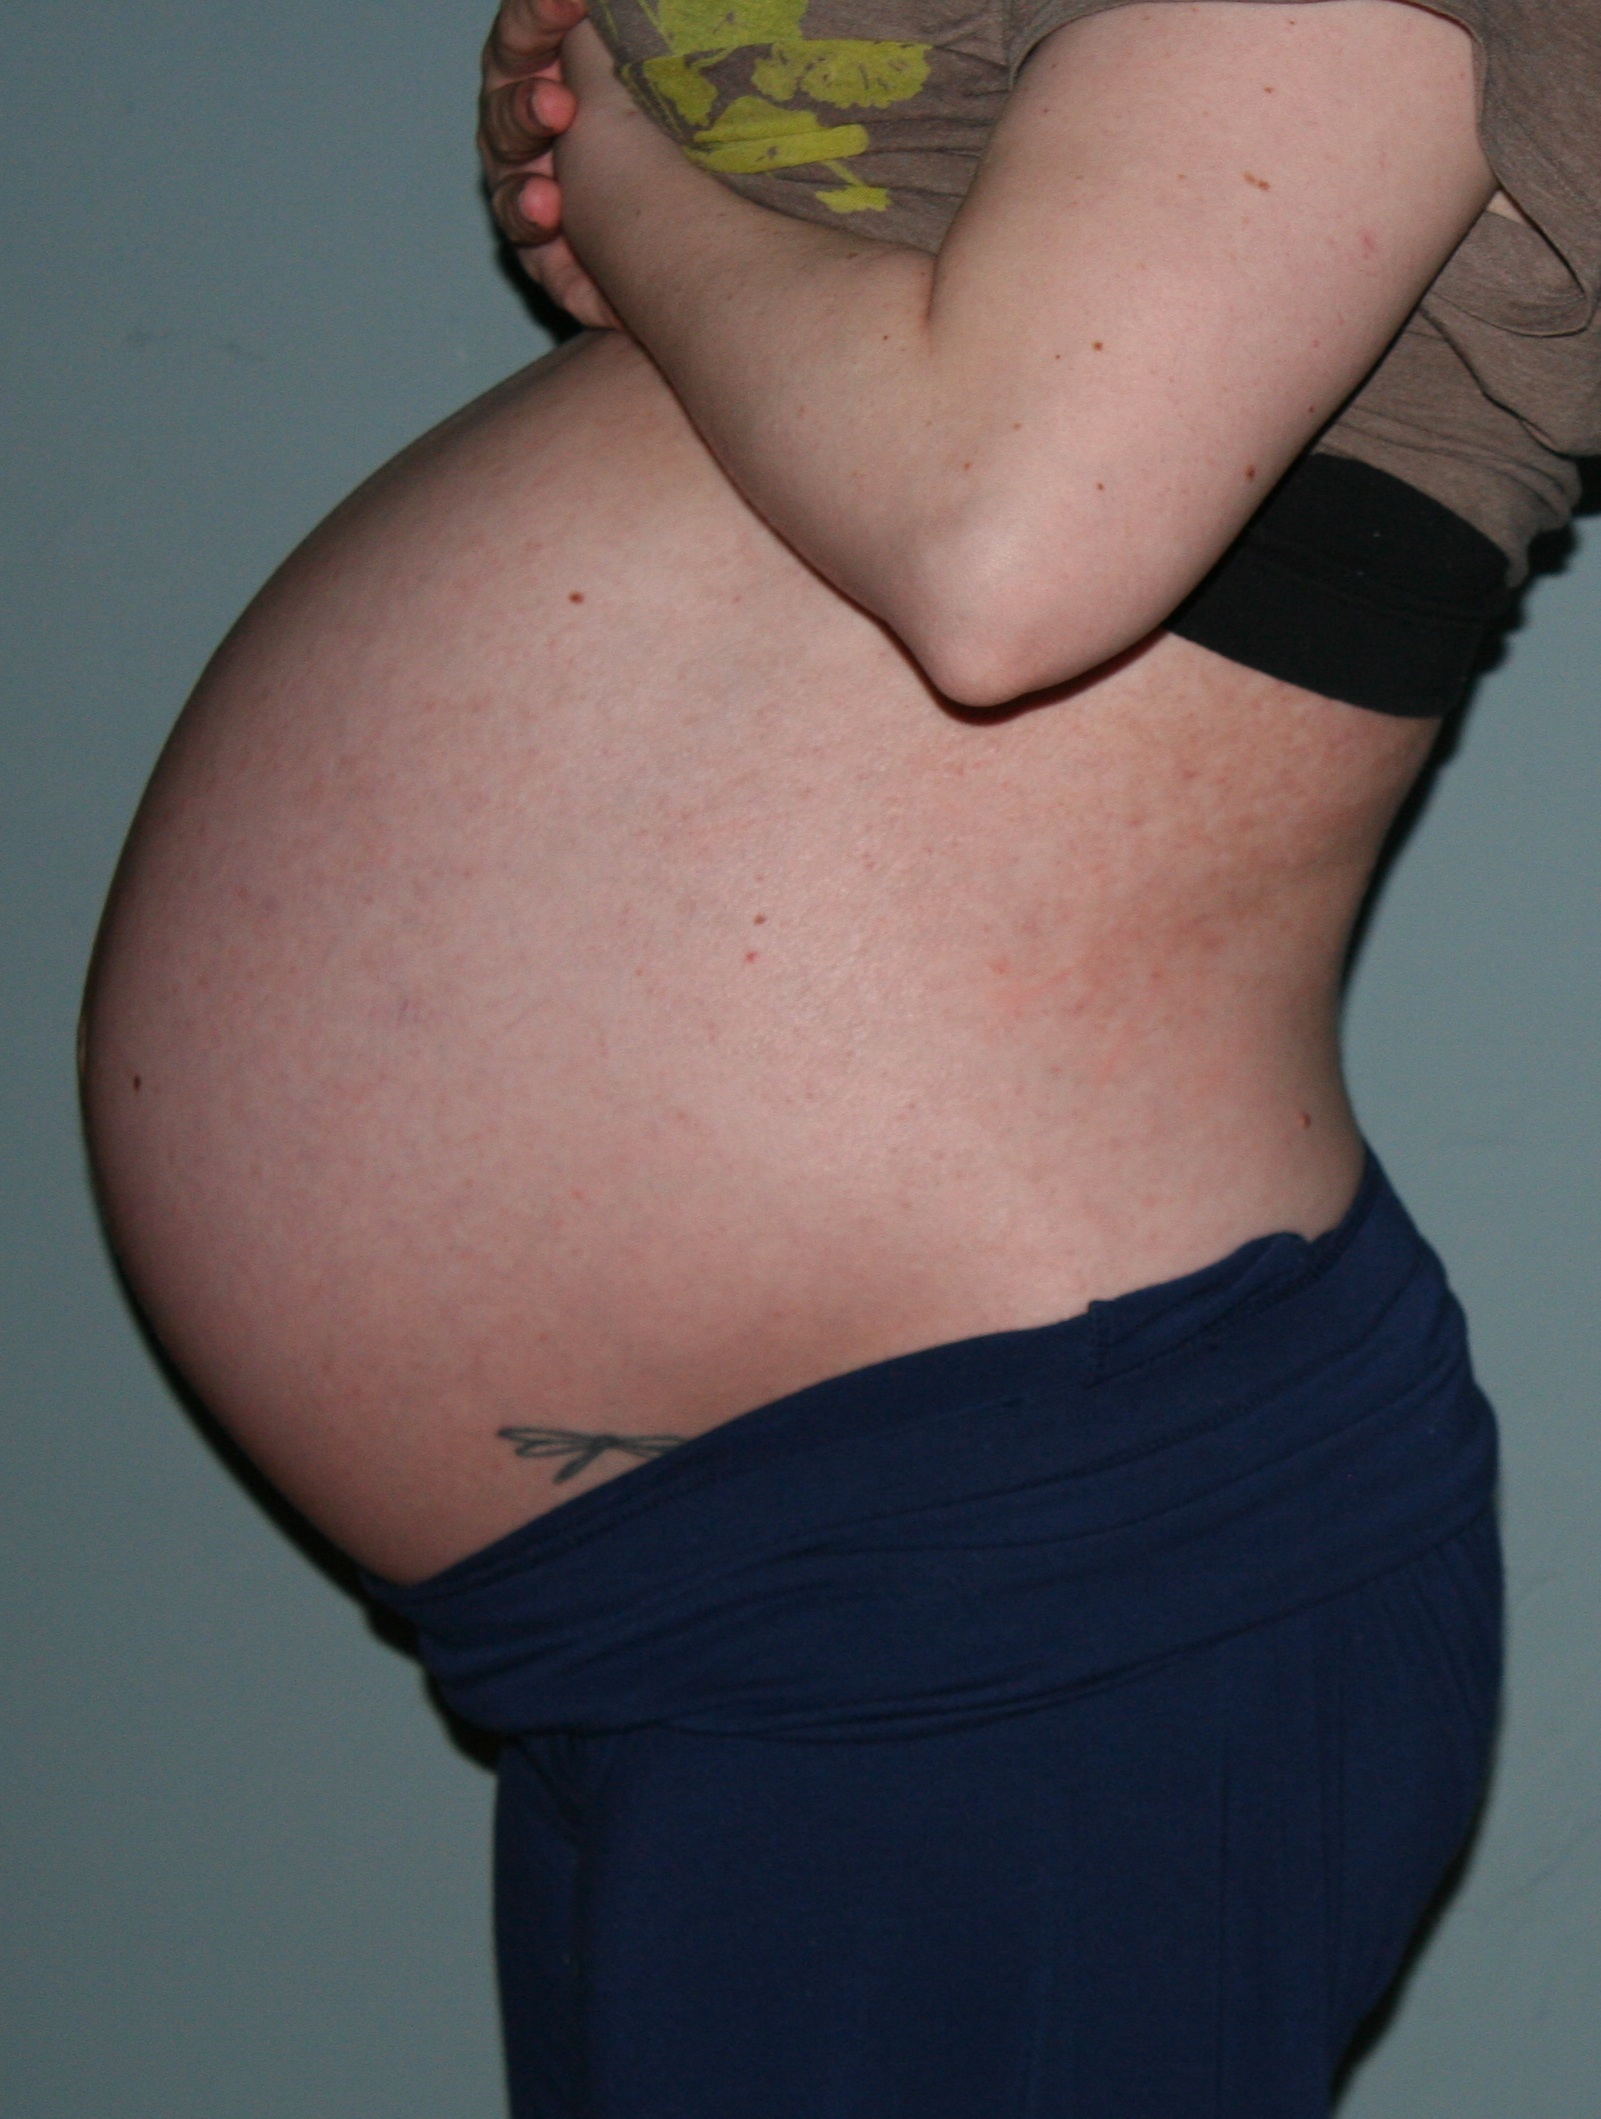 Как выглядит живот на 7 месяце беременности фото